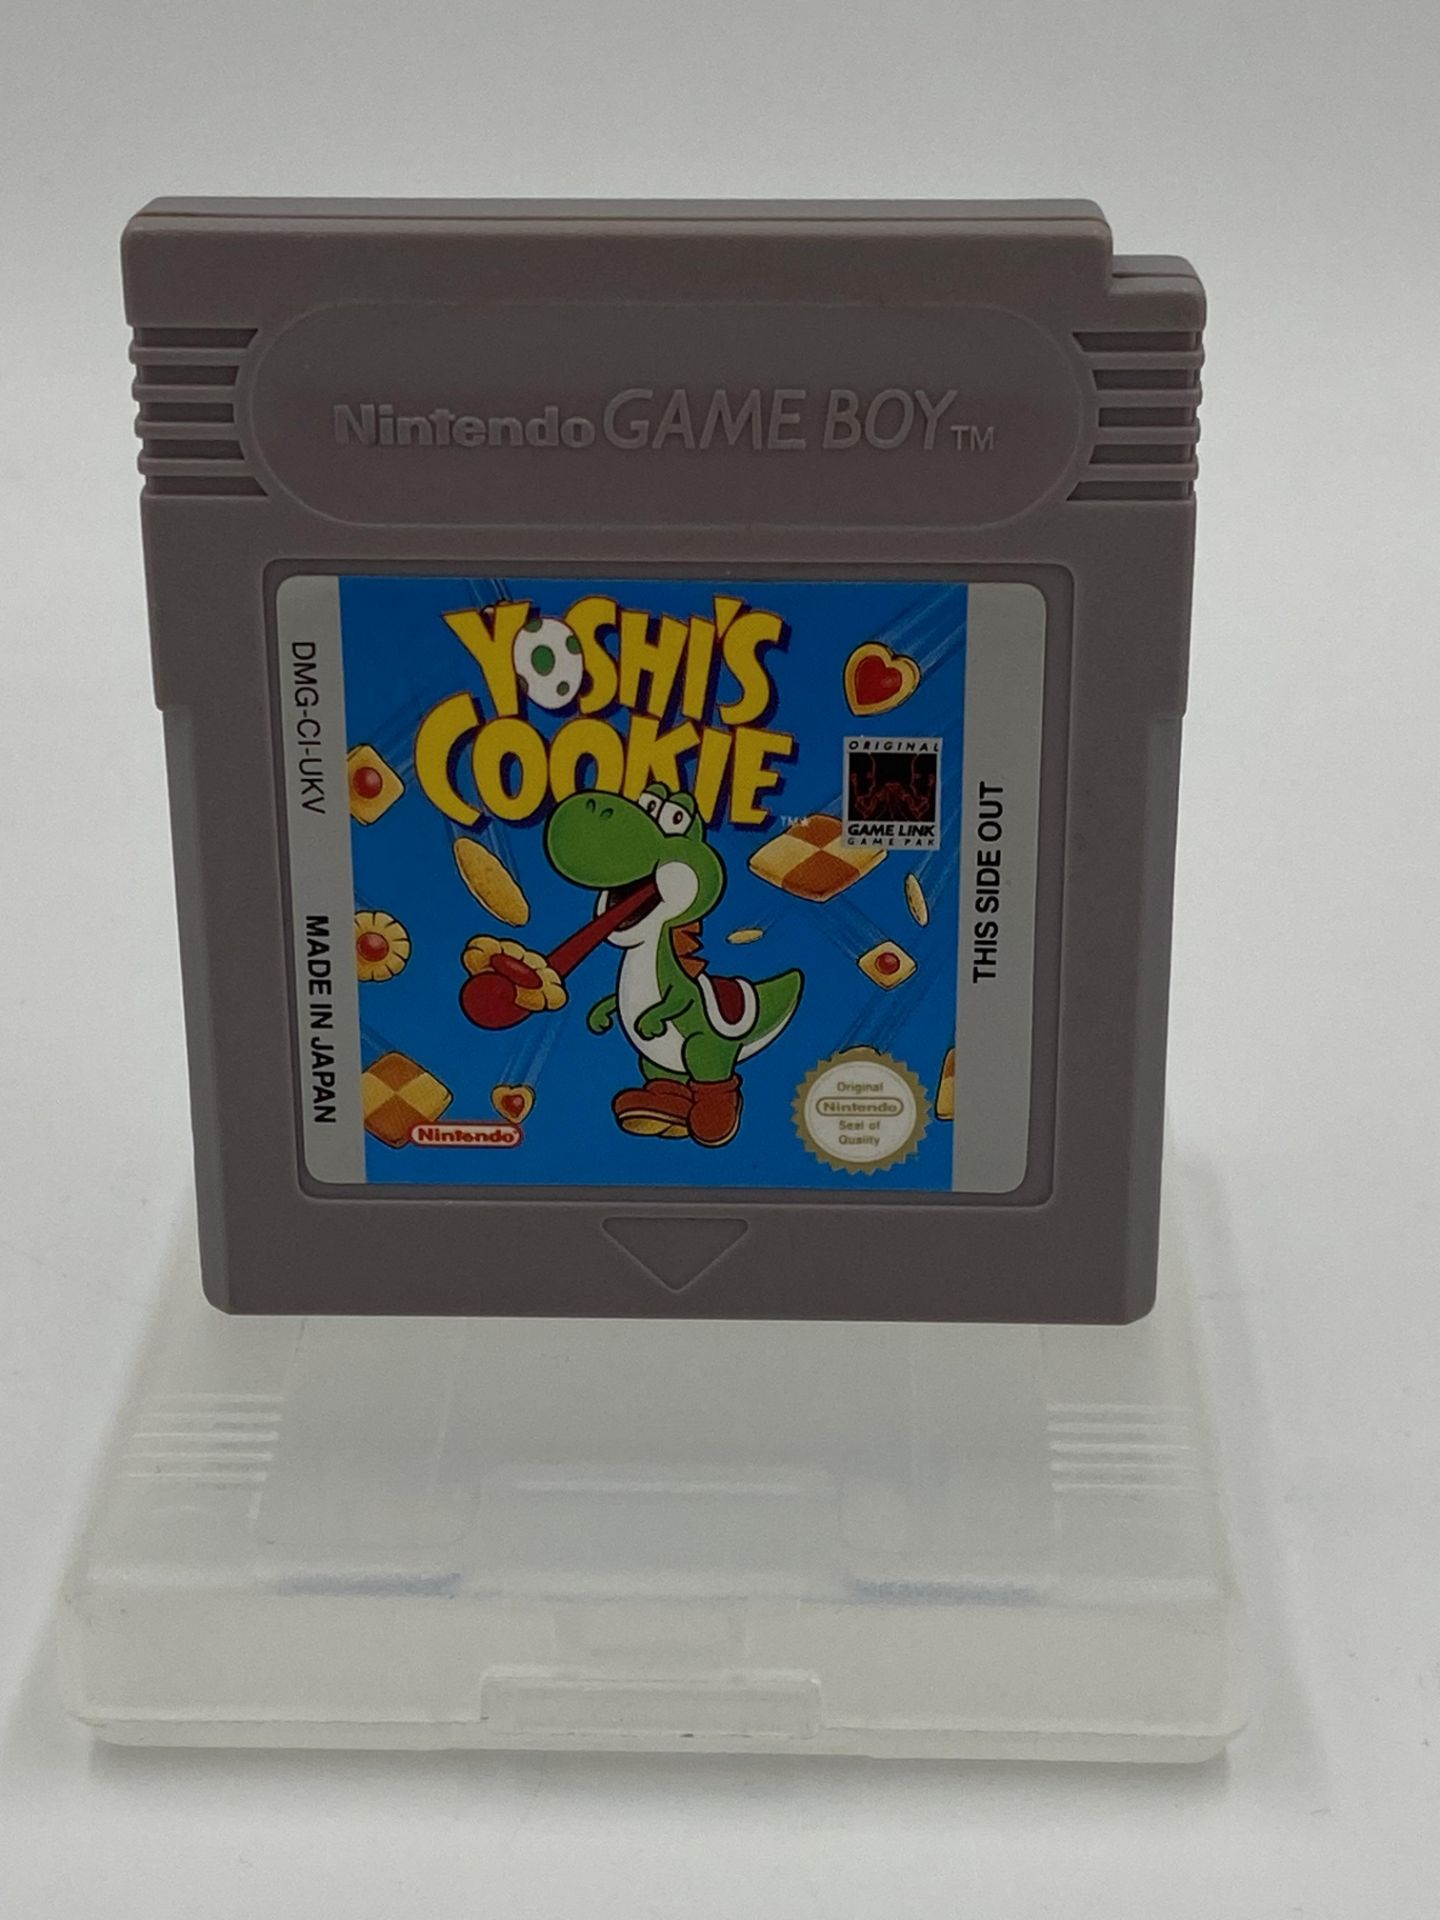 Nintendo Game Boy Yoshi's Cookie